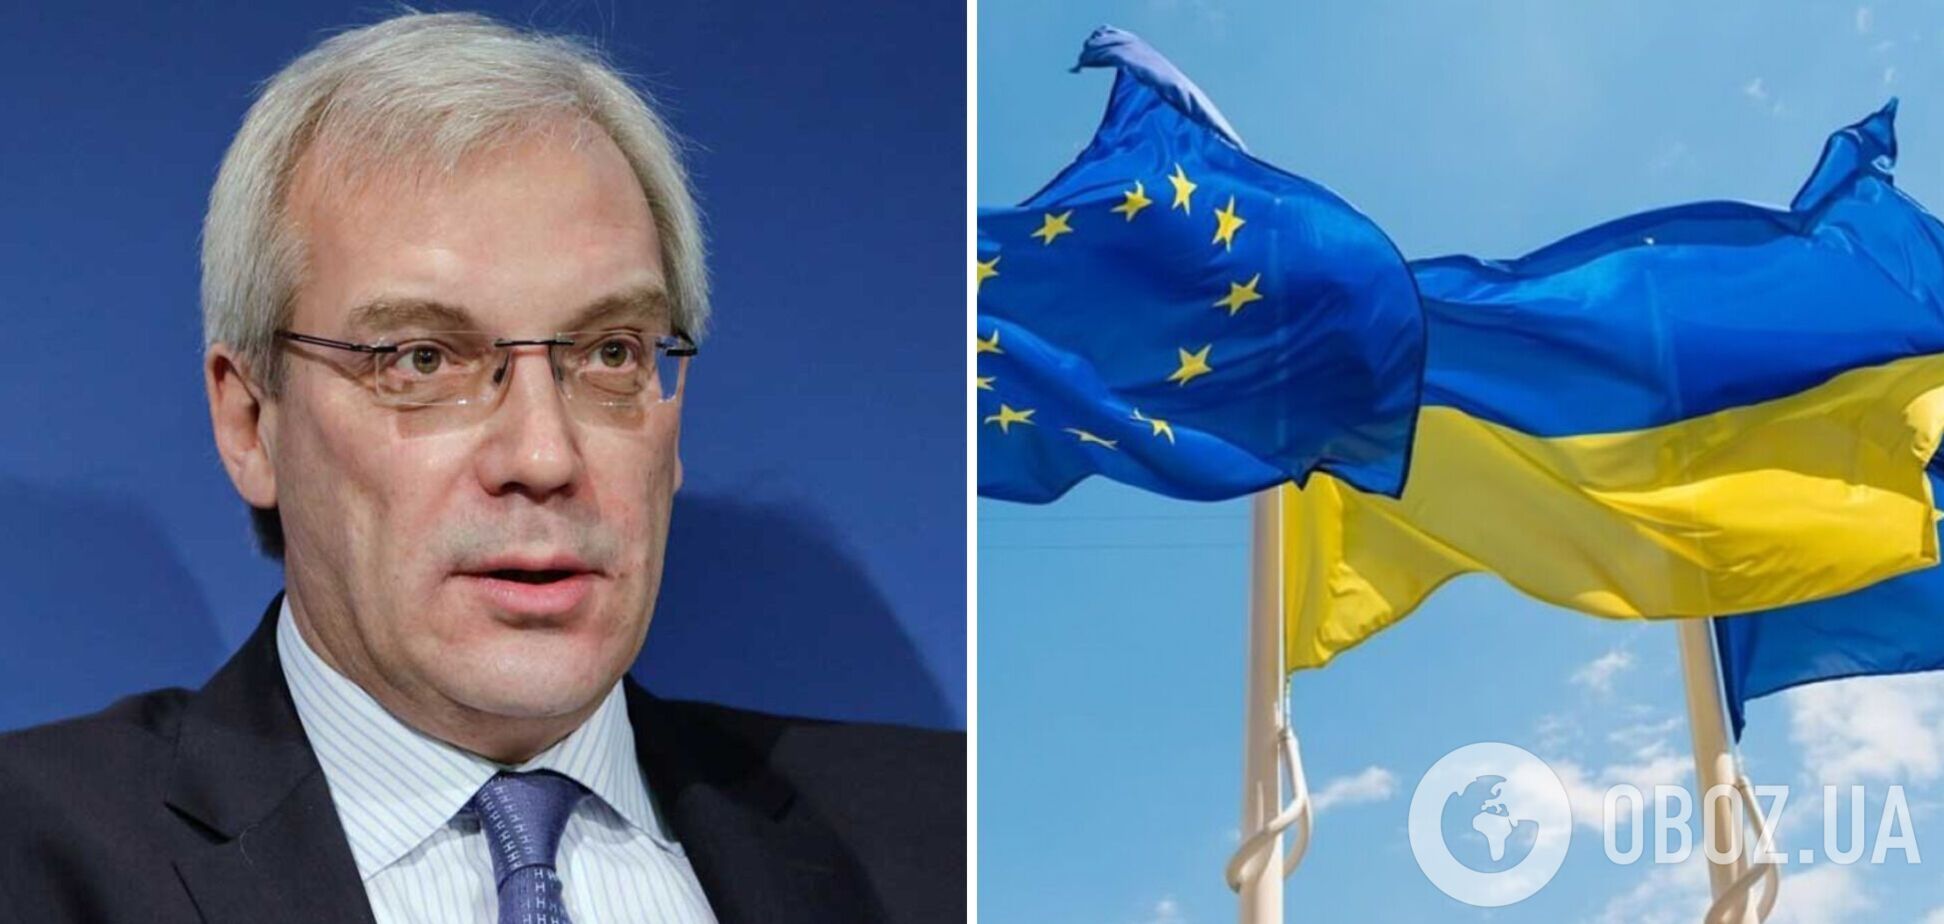 Грушко загрожує ЄС через вступ України